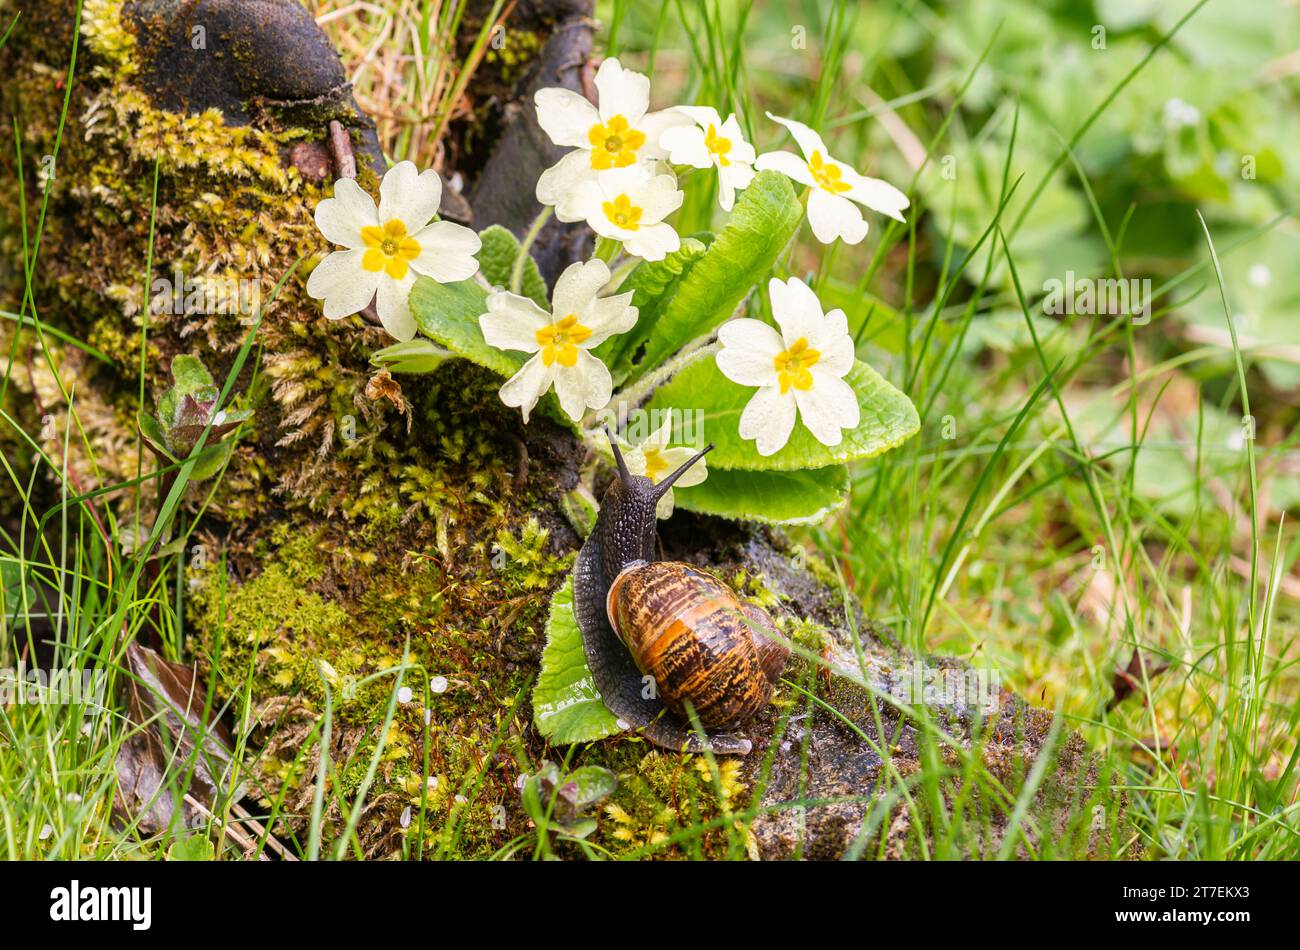 Garden Snail Cornu aspersum, sur des primevres poussant à partir de bottes couvertes de mousse au bord de l'étang de jardin, mai Banque D'Images